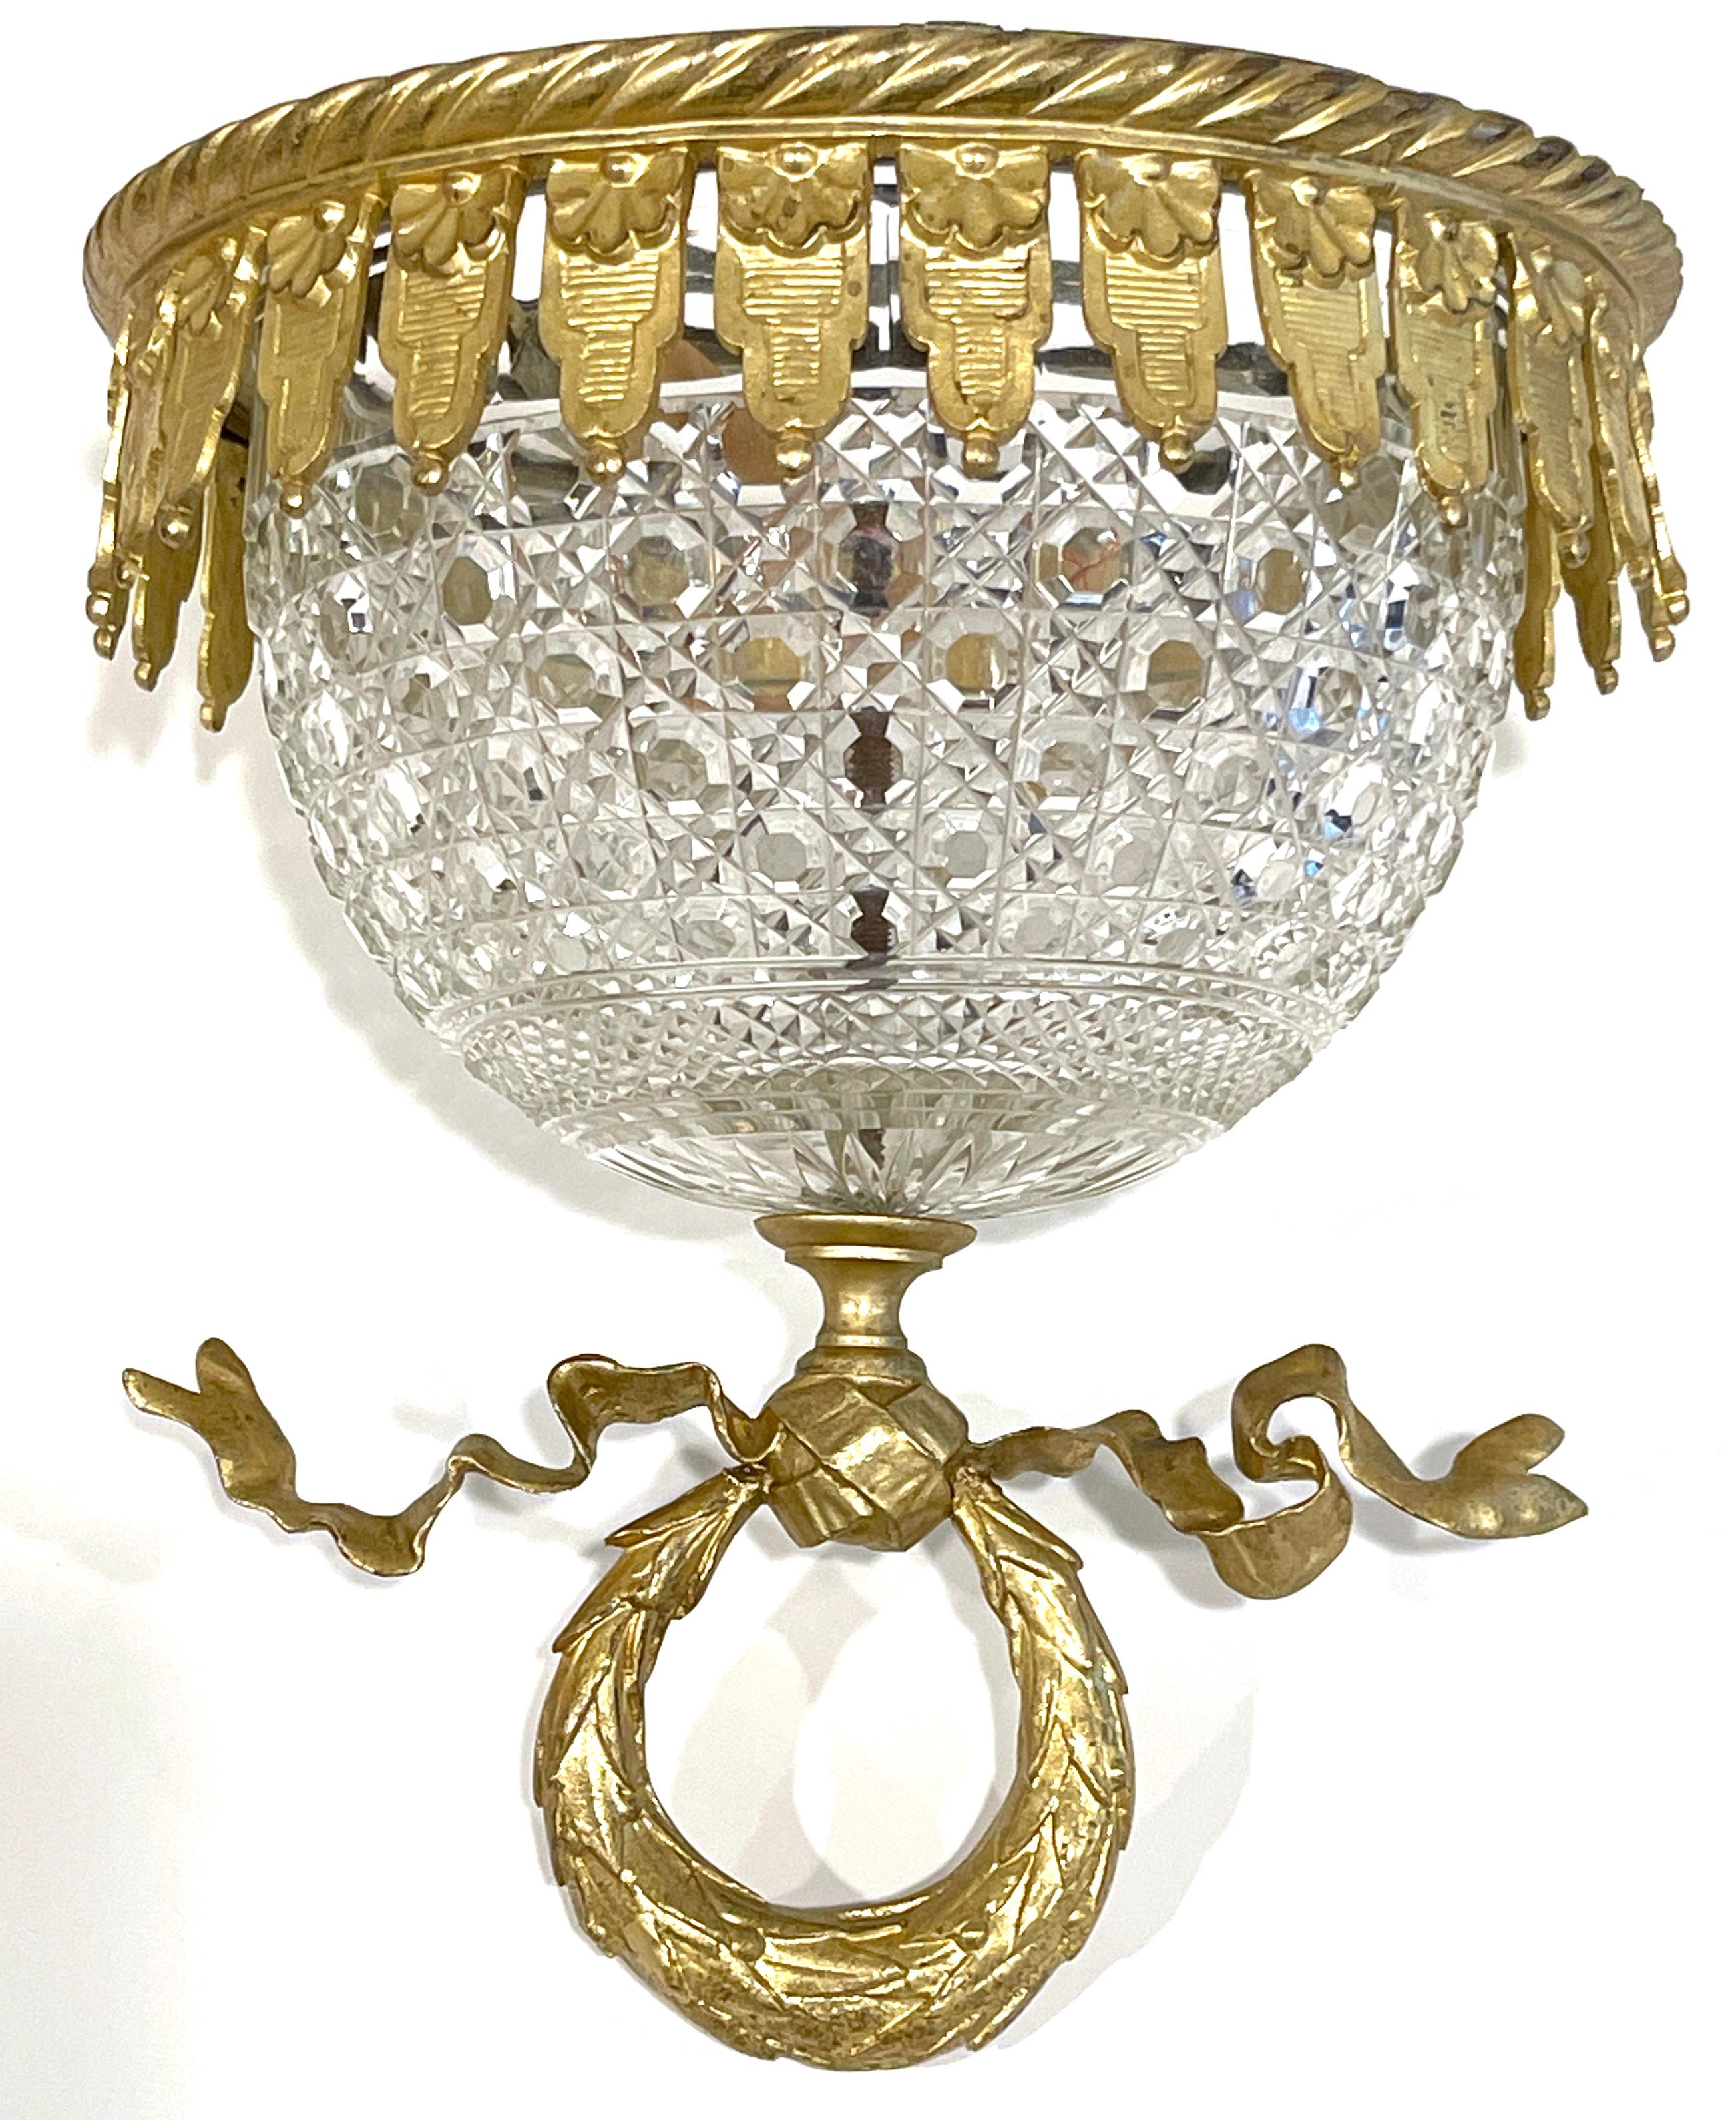 Antique lustre à encastrer en cristal de Baccarat ( atrib.) monté en Ormolu.
France, vers 1900
Attribué à Baccarat 

Une œuvre impressionnante, de petite taille, qui témoigne de la qualité supérieure de l'artisanat et du design des cristalleries